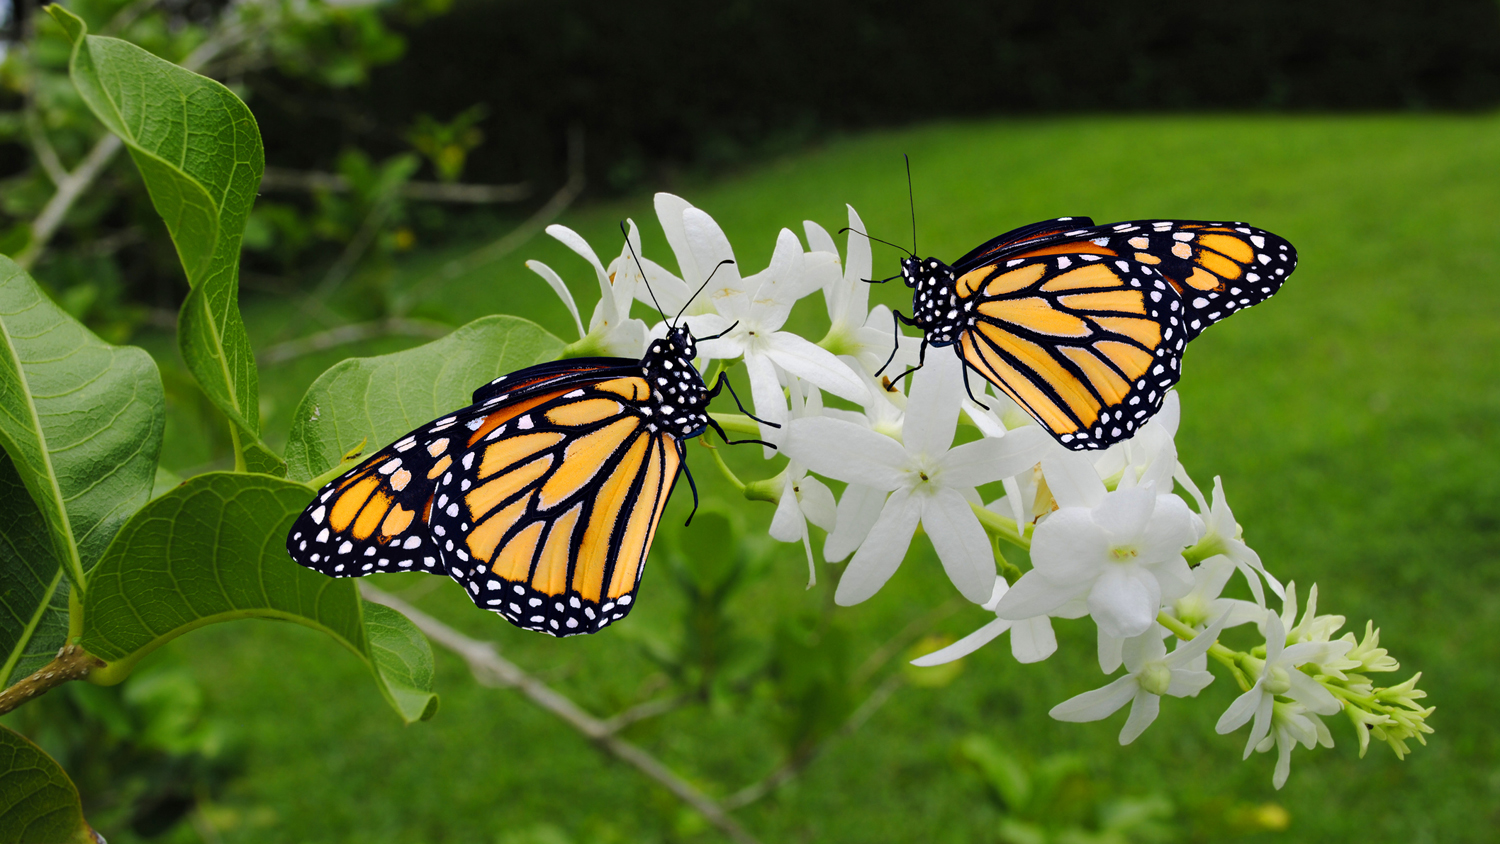 Two Monarch butterflies